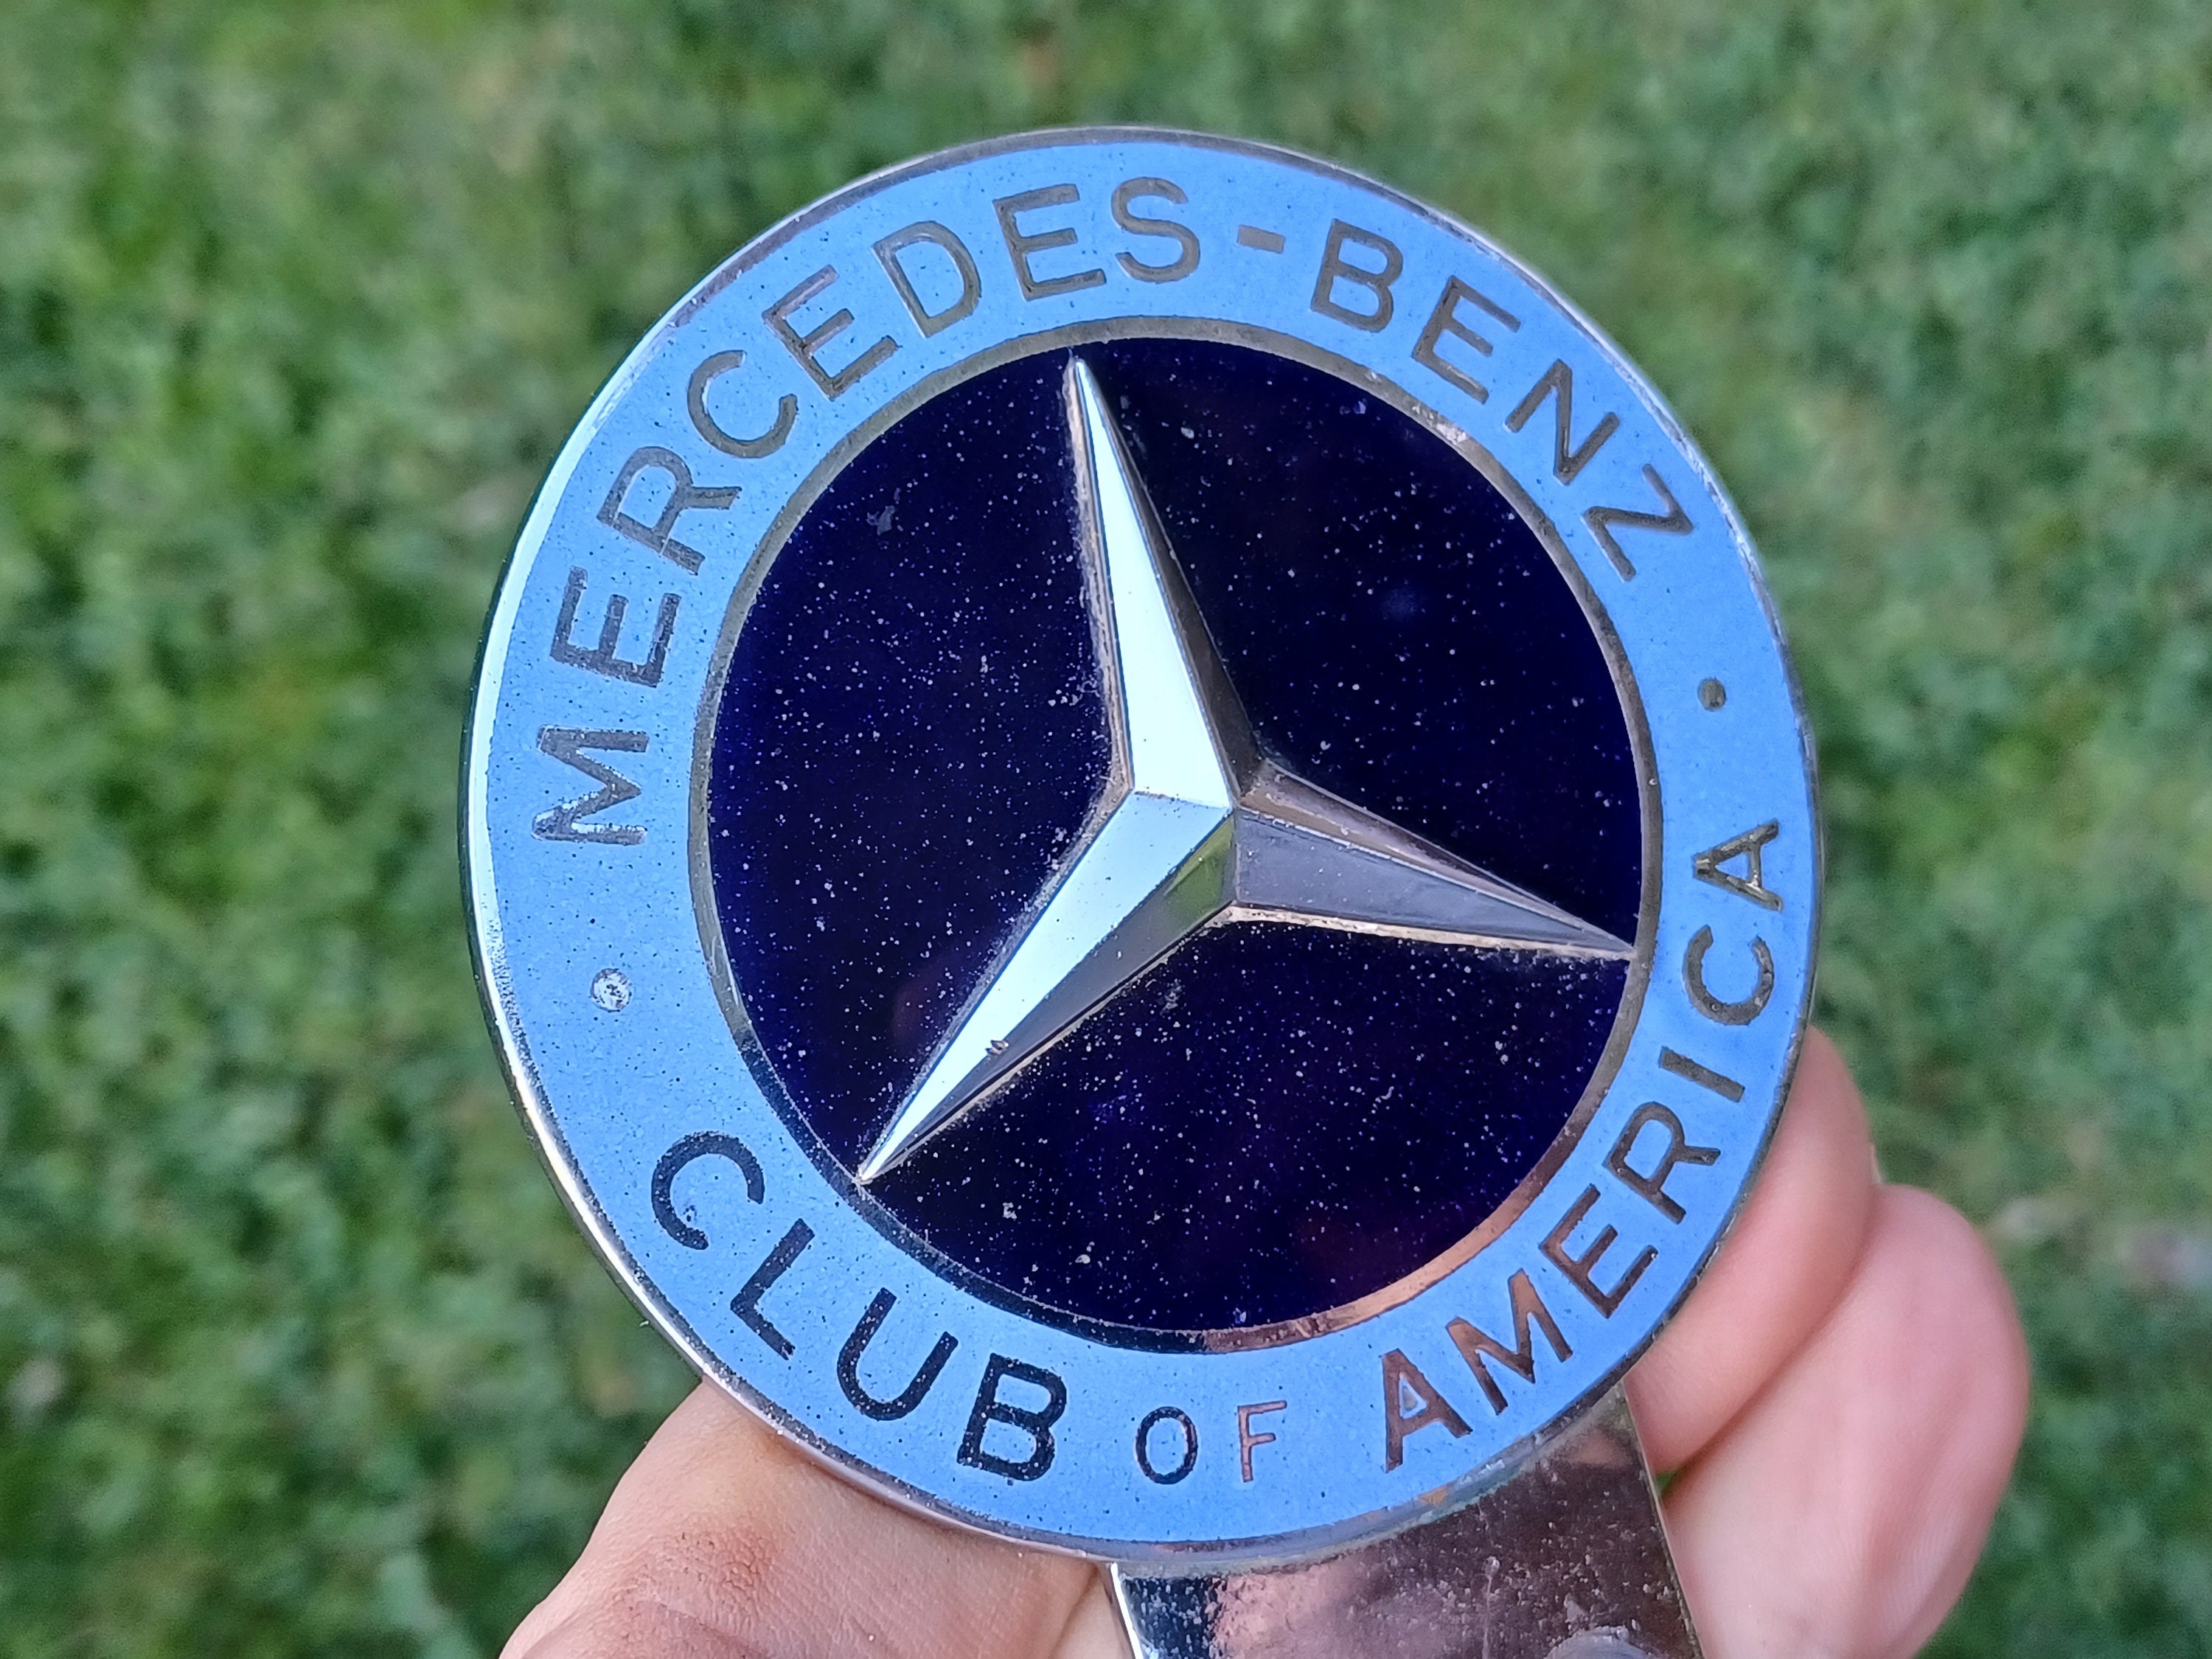 1959 Mercedes Benz Club of America Car Blue Enamel Badge by Vilem